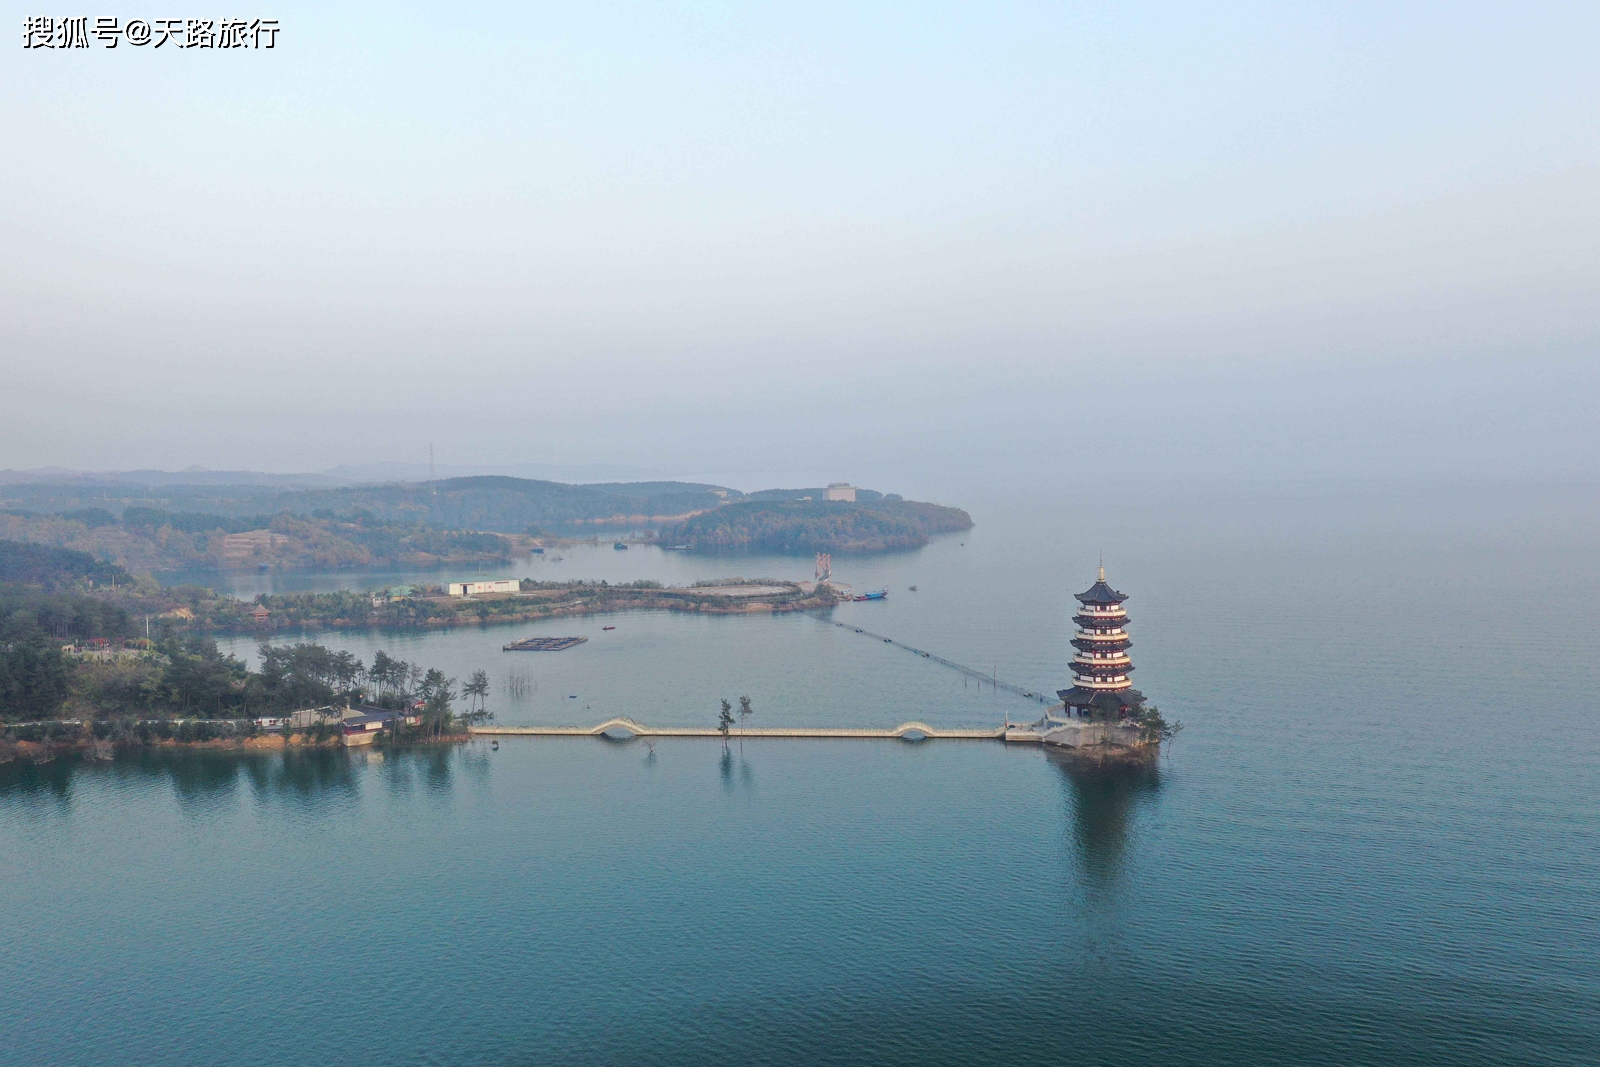 丹江口水库是亚洲第一大人工淡水湖泊,被称为汉江的天然水位调节器